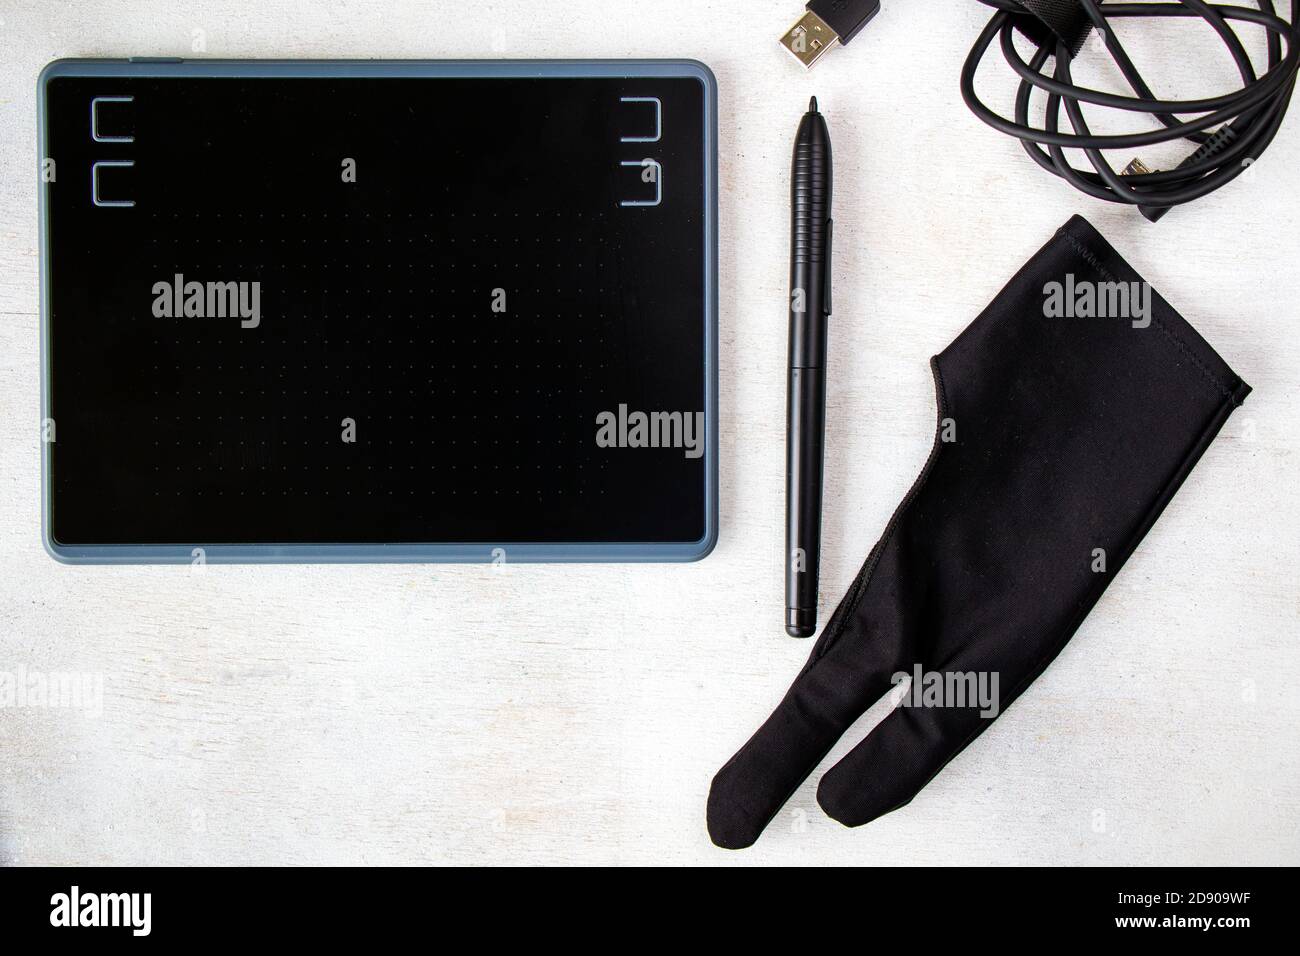 Zeichnen und Malen Tablet, Handschuh und Stift auf dem weißen Hintergrund,  High-Angle-Ansicht Stockfotografie - Alamy